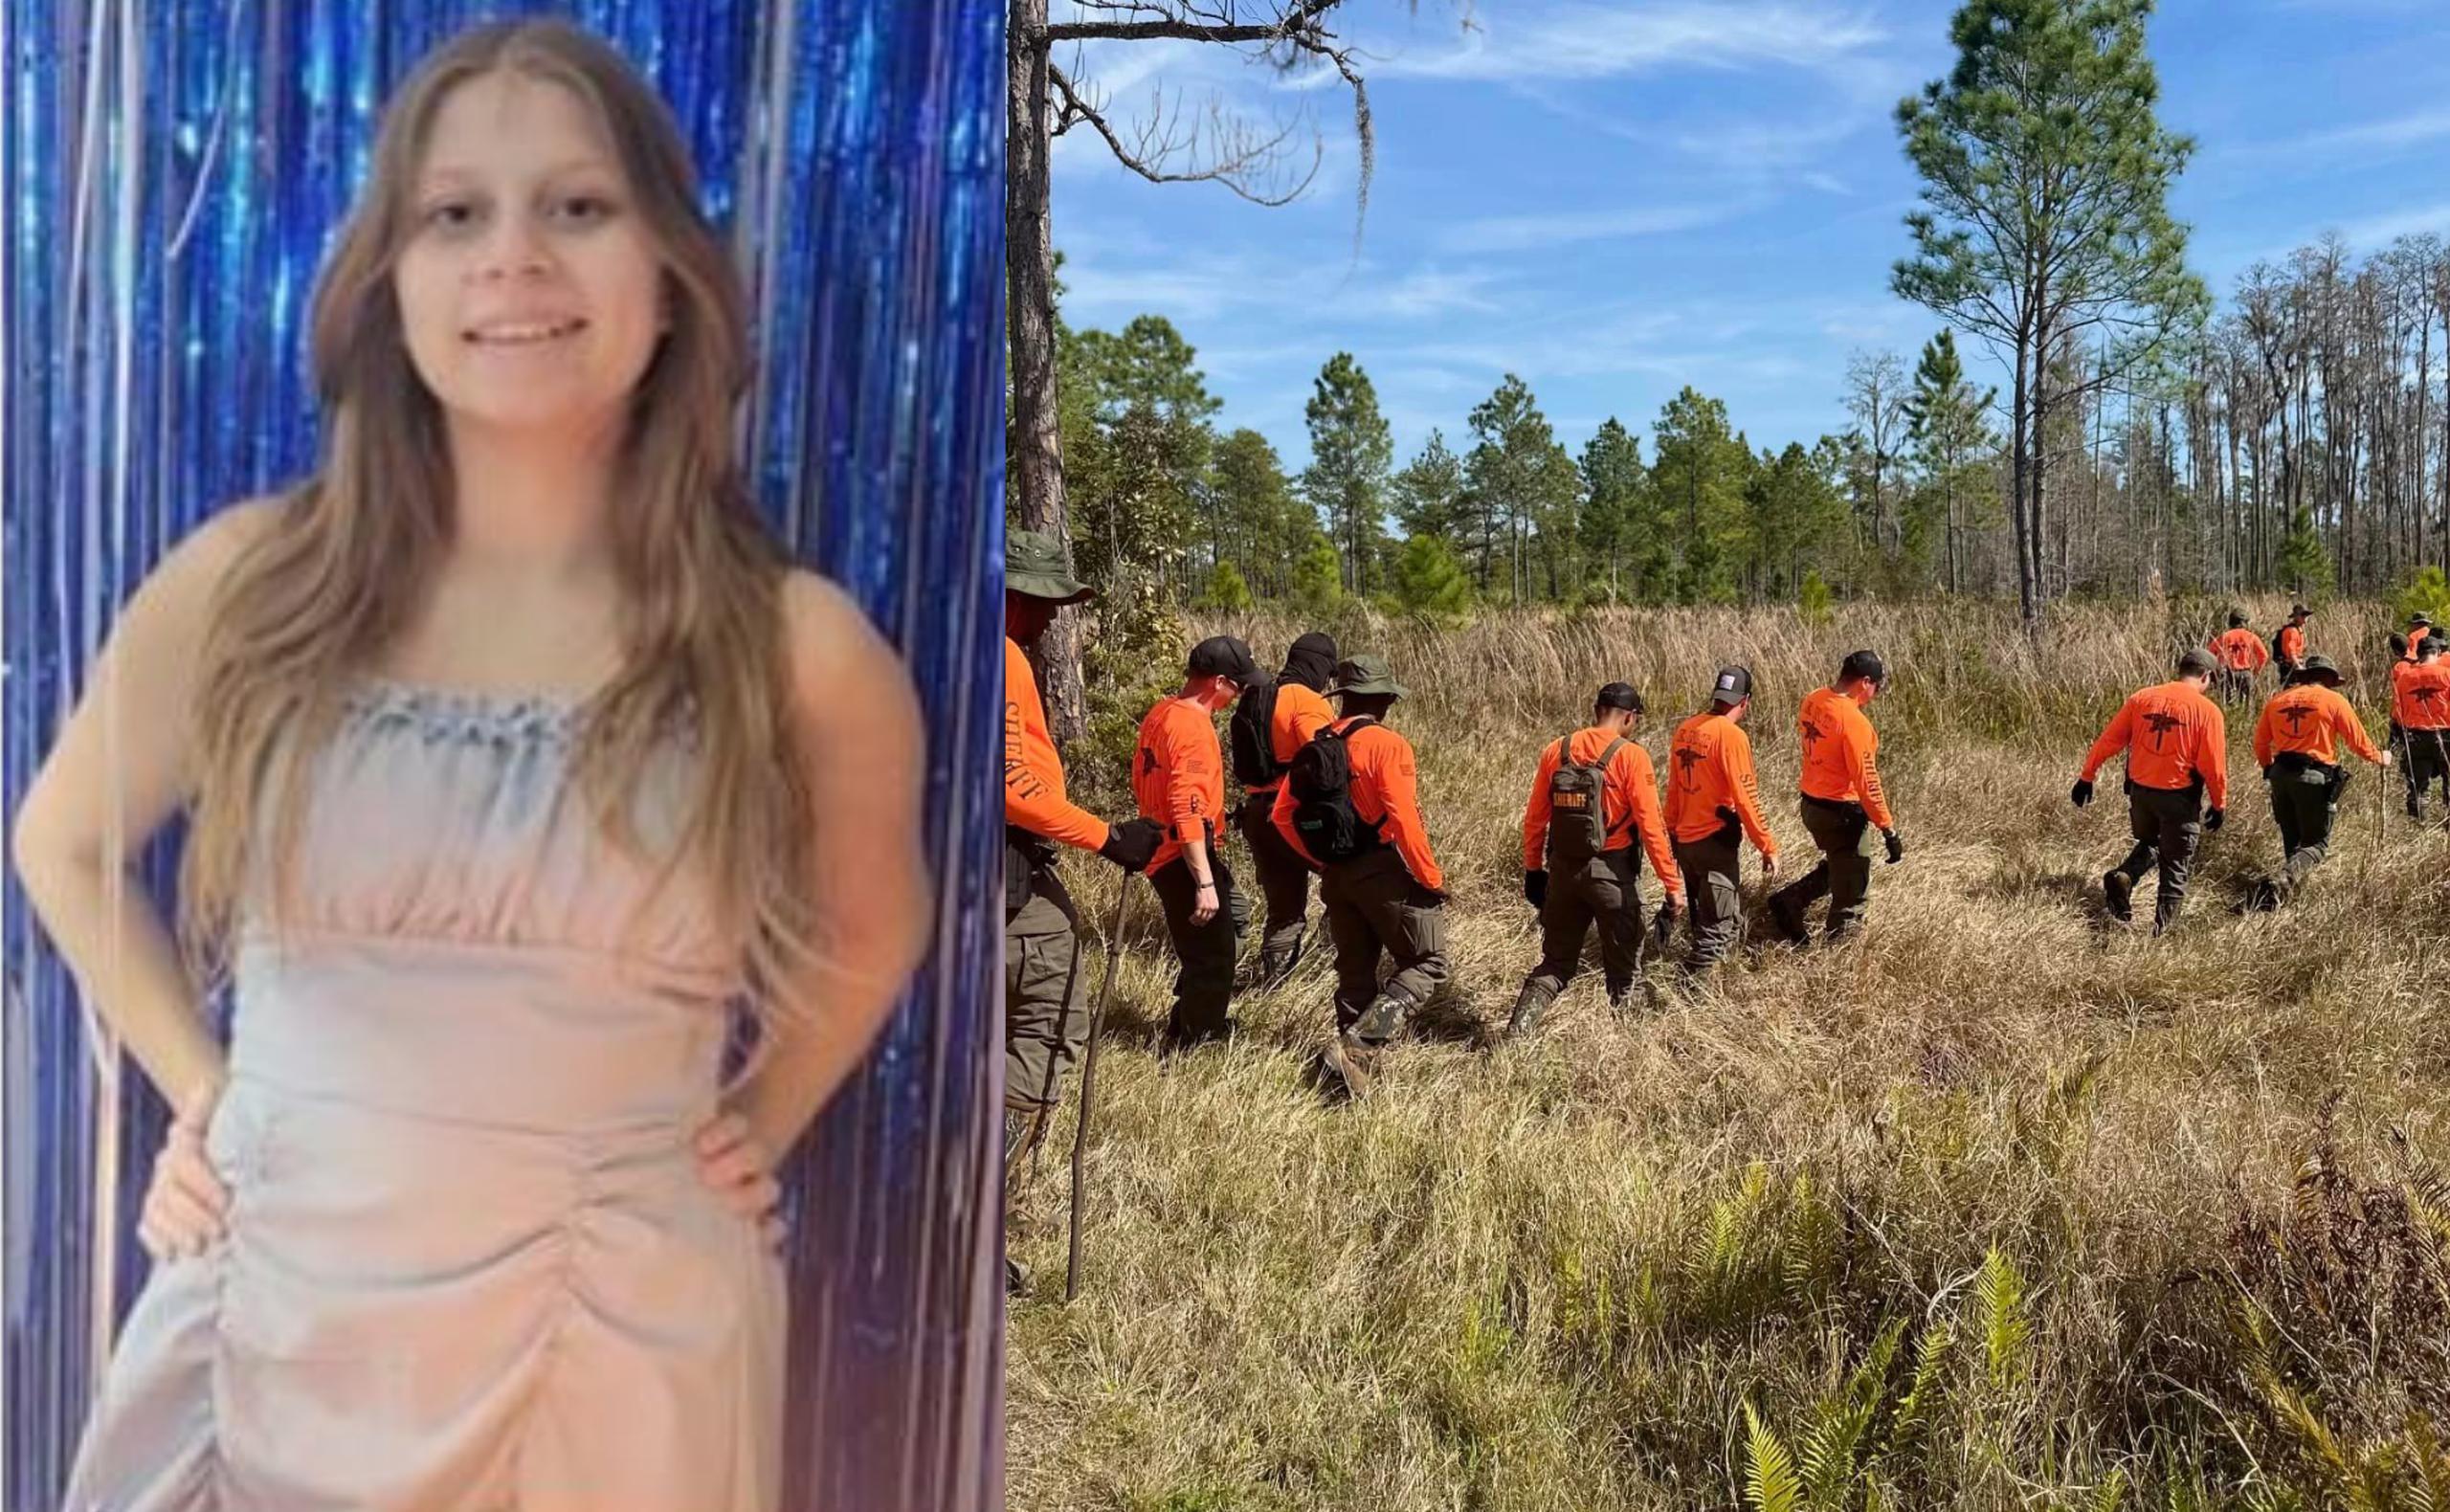 Madeline Soto fue reportada como desaparecida el 26 de febrero y su cuerpo fue encontrado el 1 de marzo en una zona boscosa de St. Cloud, Florida.